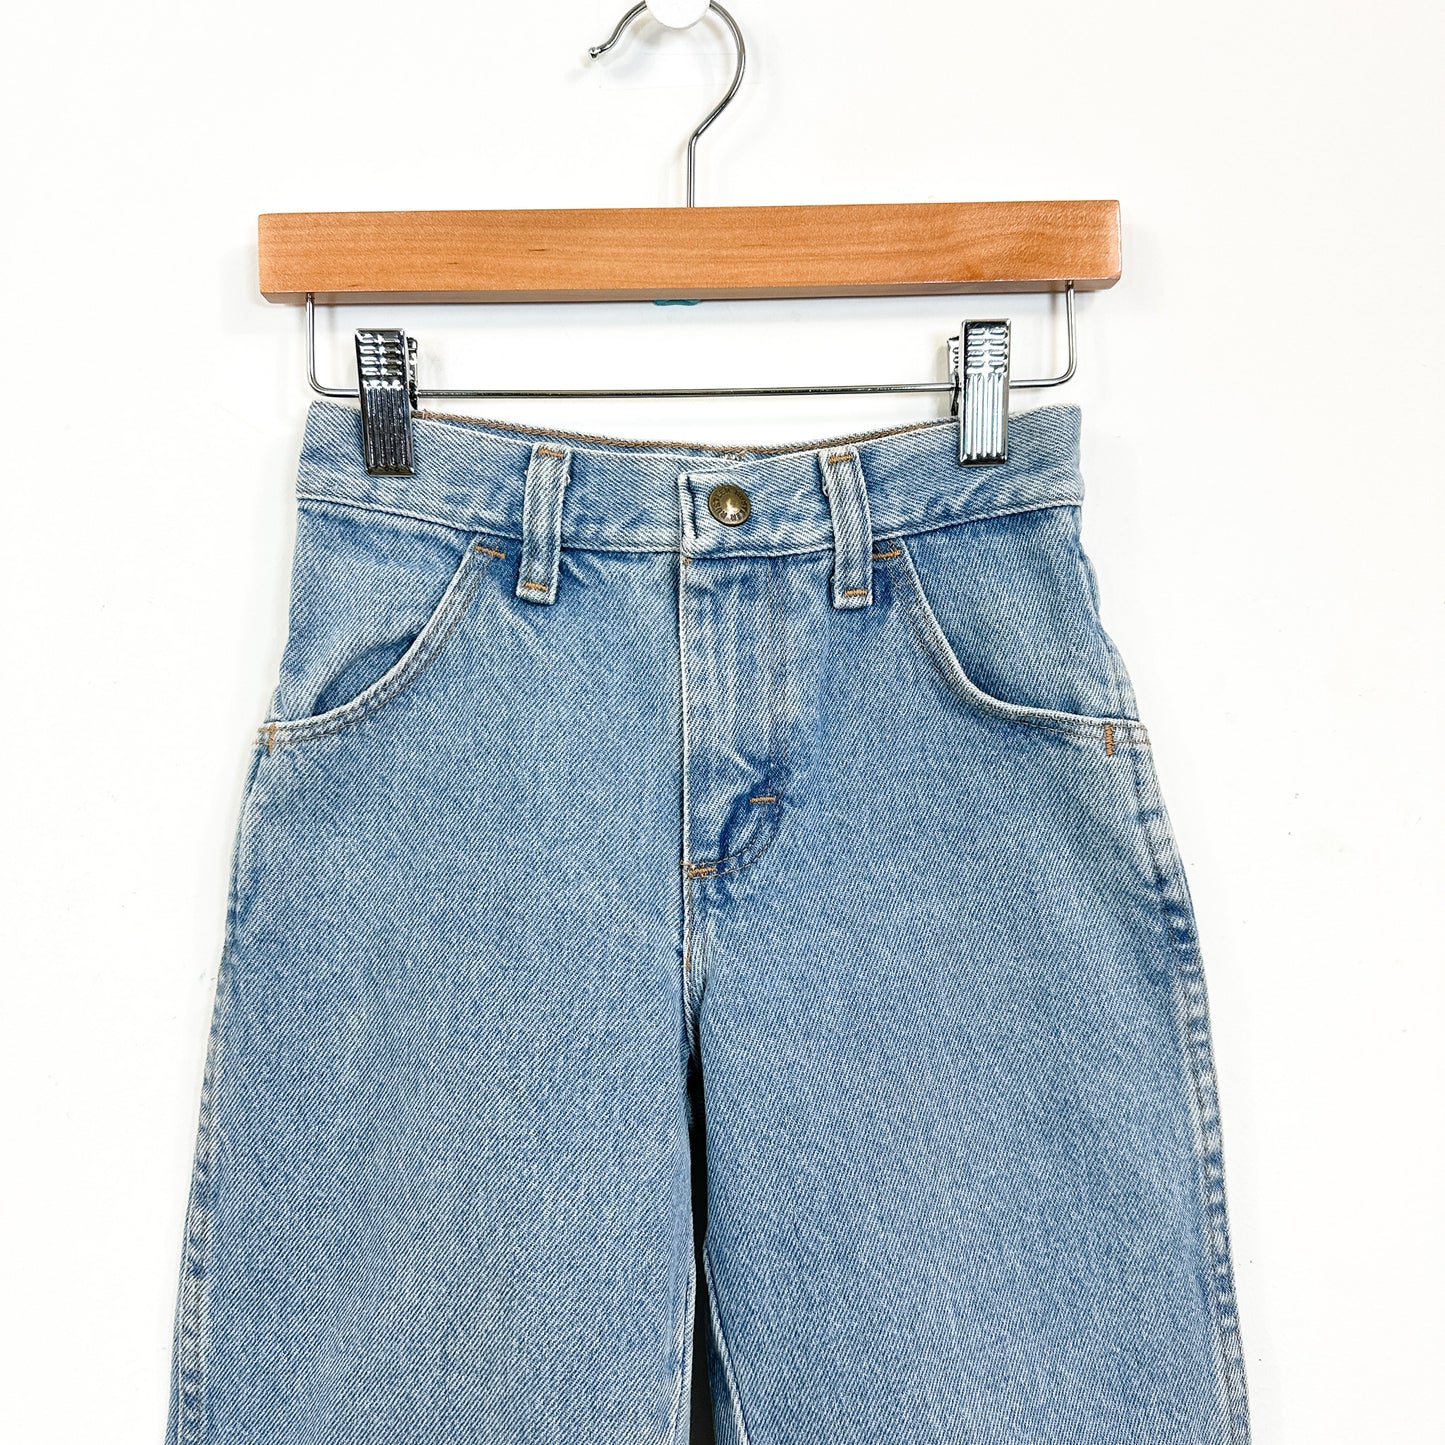 Vintage Kids Rustler Light Wash Jeans - Size 8 Slim